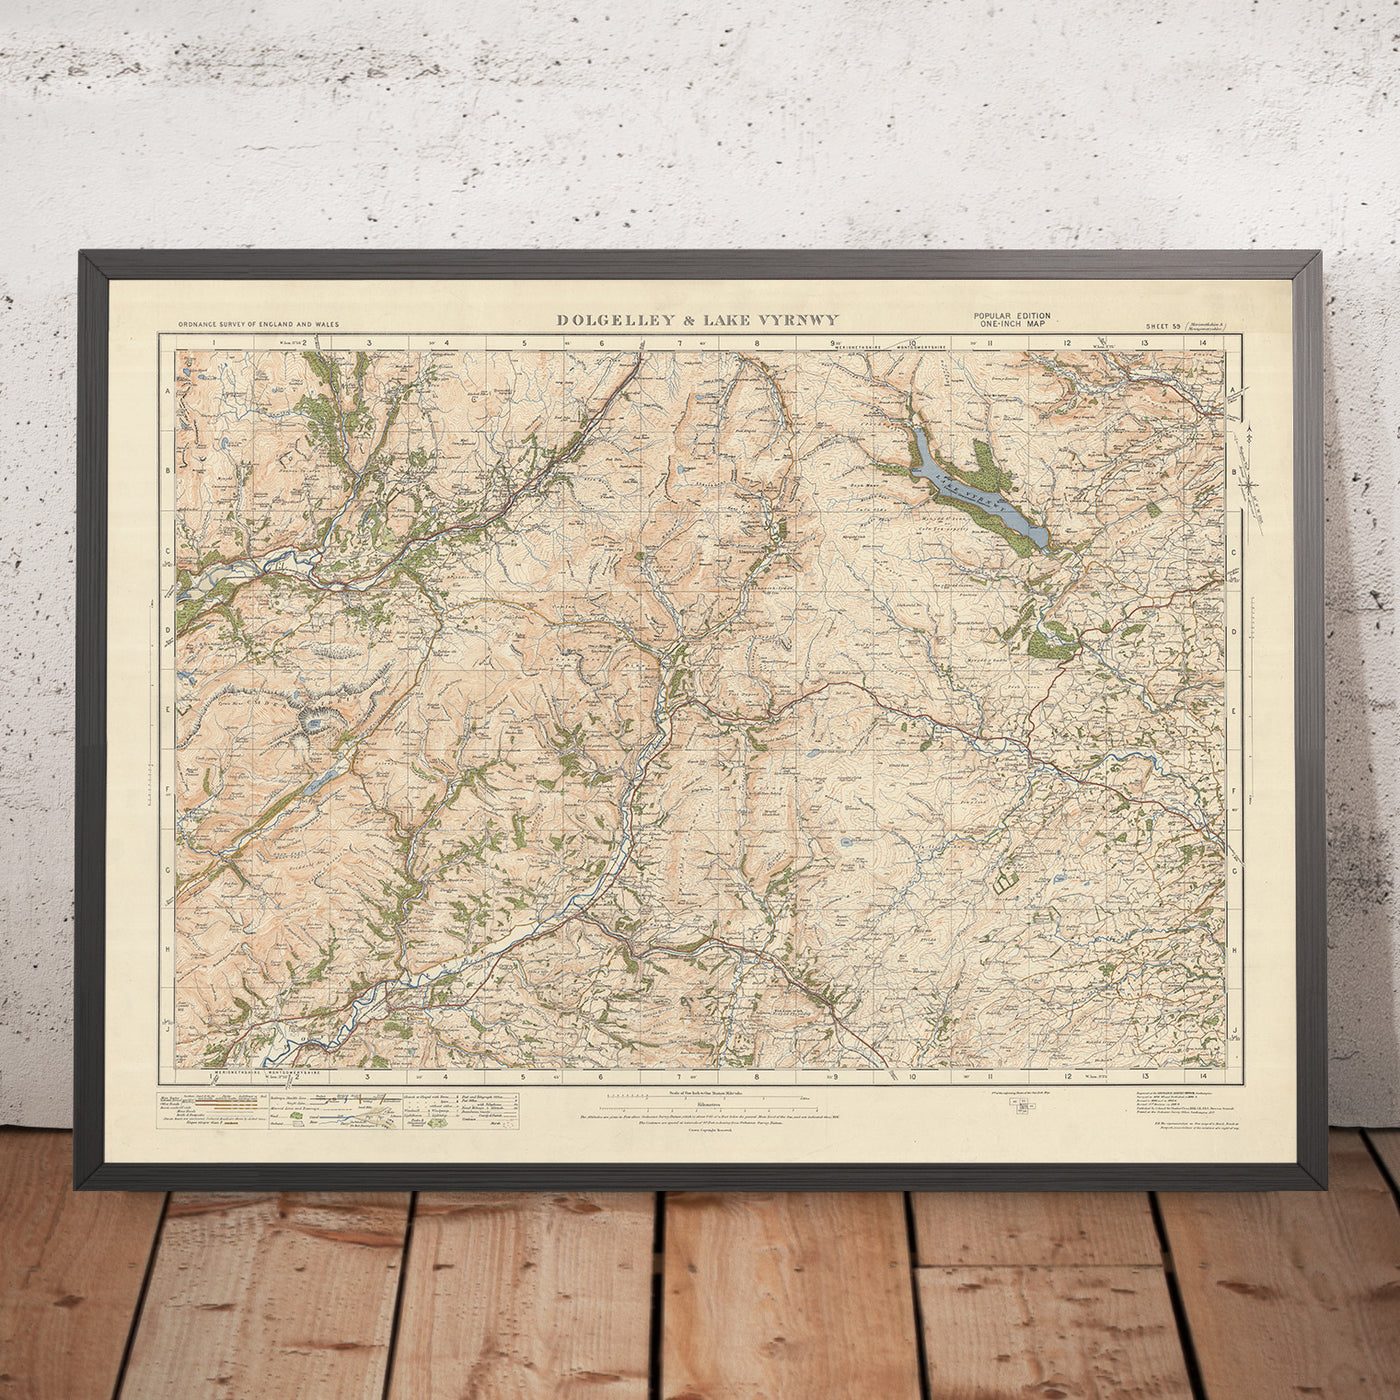 Old Ordnance Survey Map, Sheet 59 - Dolgelly & Lake Vyrnwy, 1925: Machynlleth, Corris, Aberangell, Coed y Brenin Forest Park, Eryri National Park